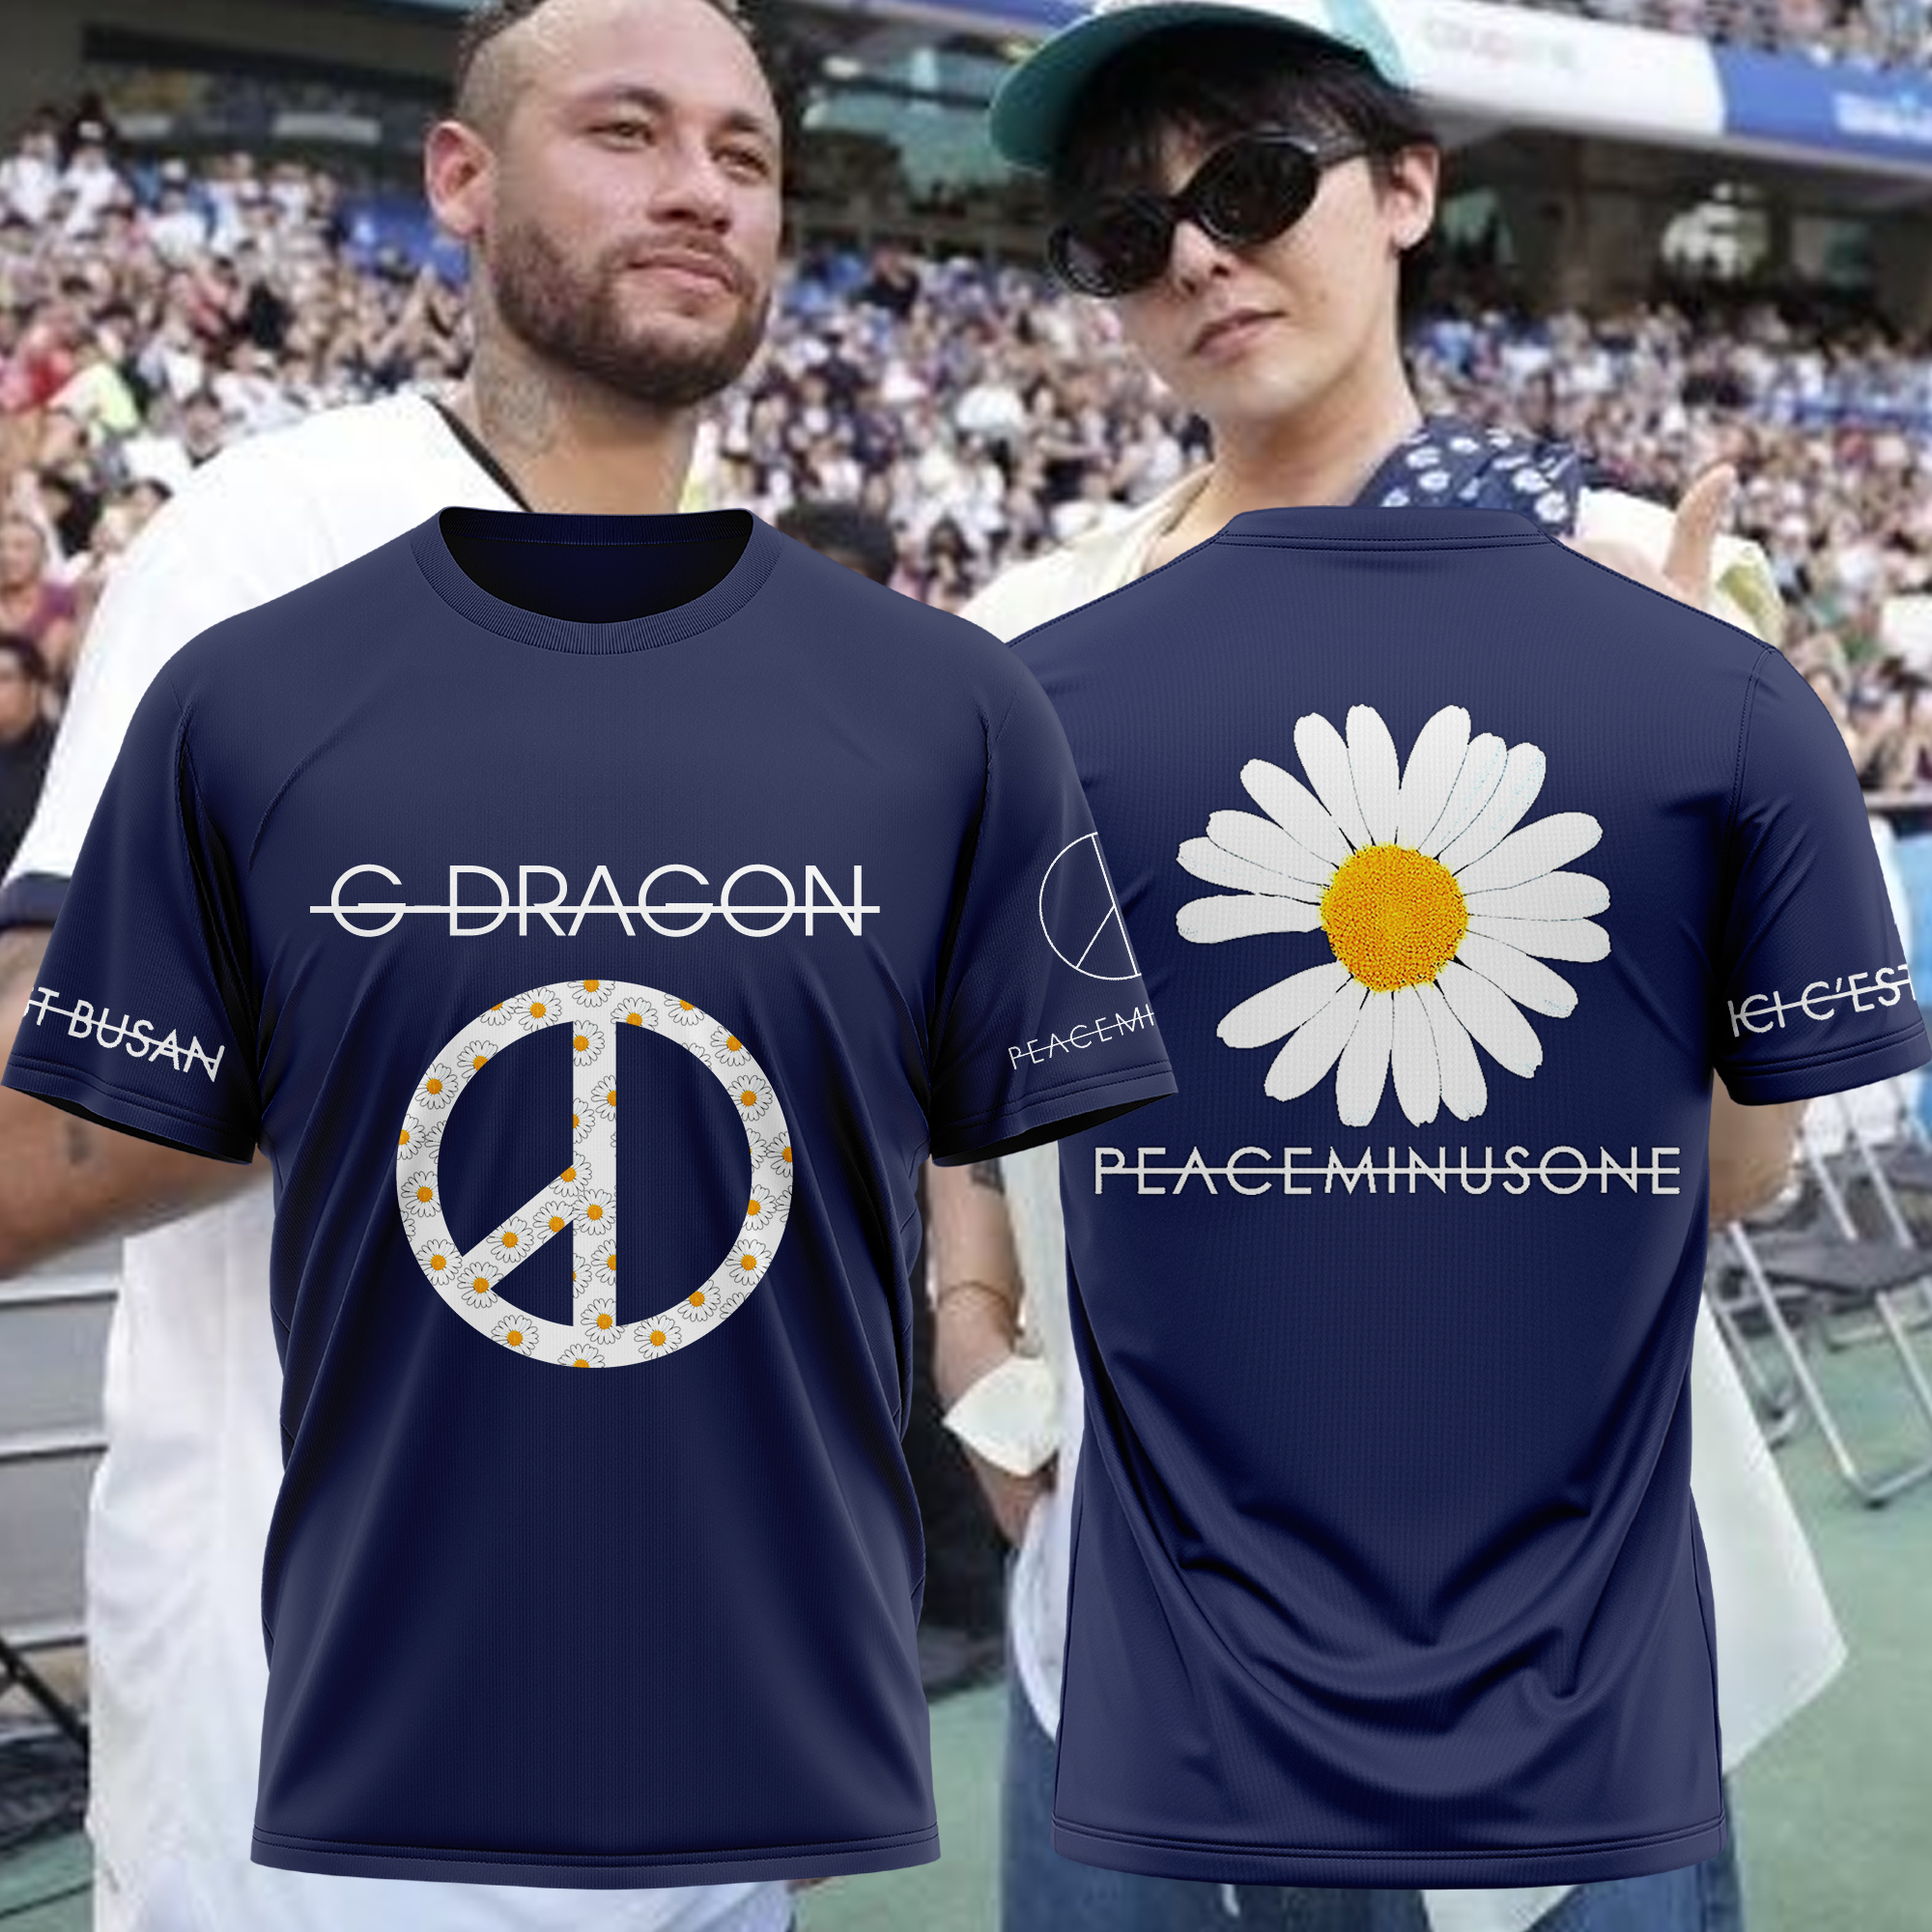 G-DRAGON × NEYMAR PSG × PEACEMINUSONE TShirt +Sitching Cap - BTF Store